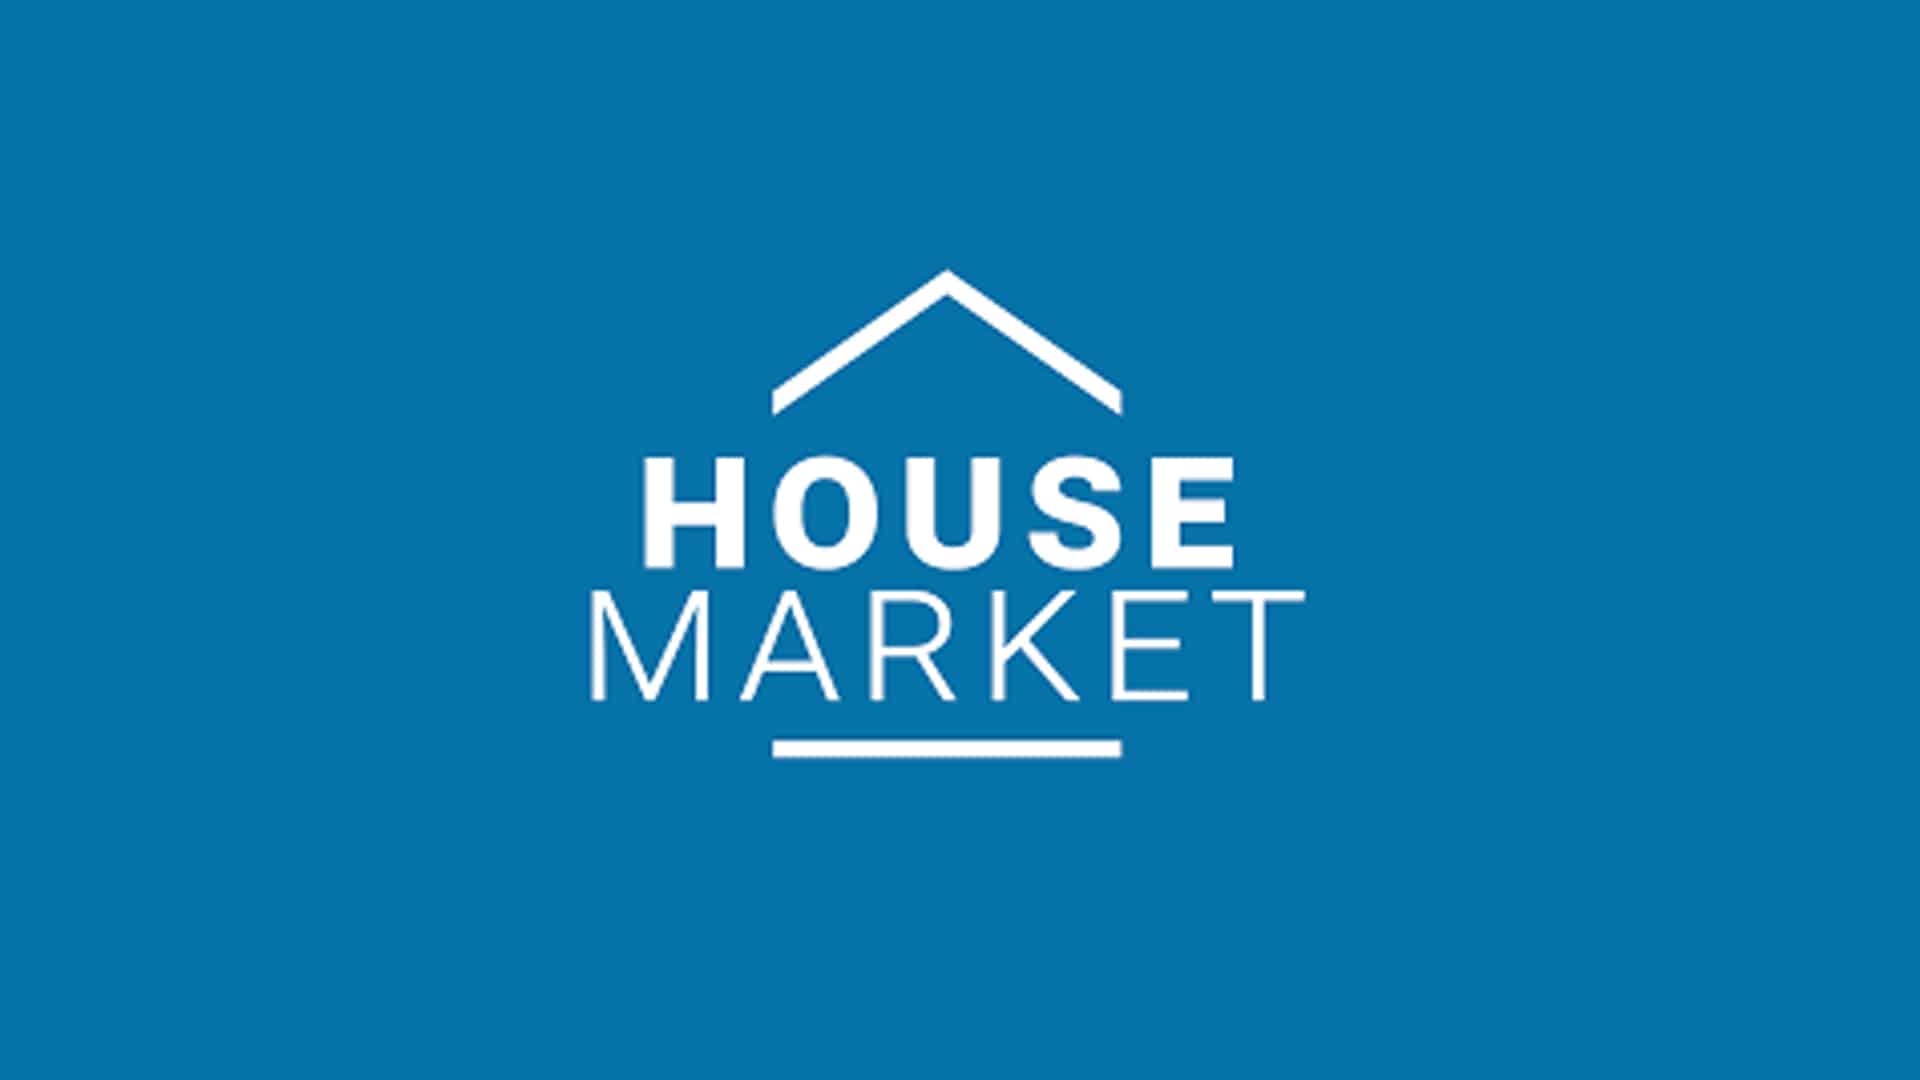 Housemarket.pl pisze o rekordzie sprzedaży WoW Wola